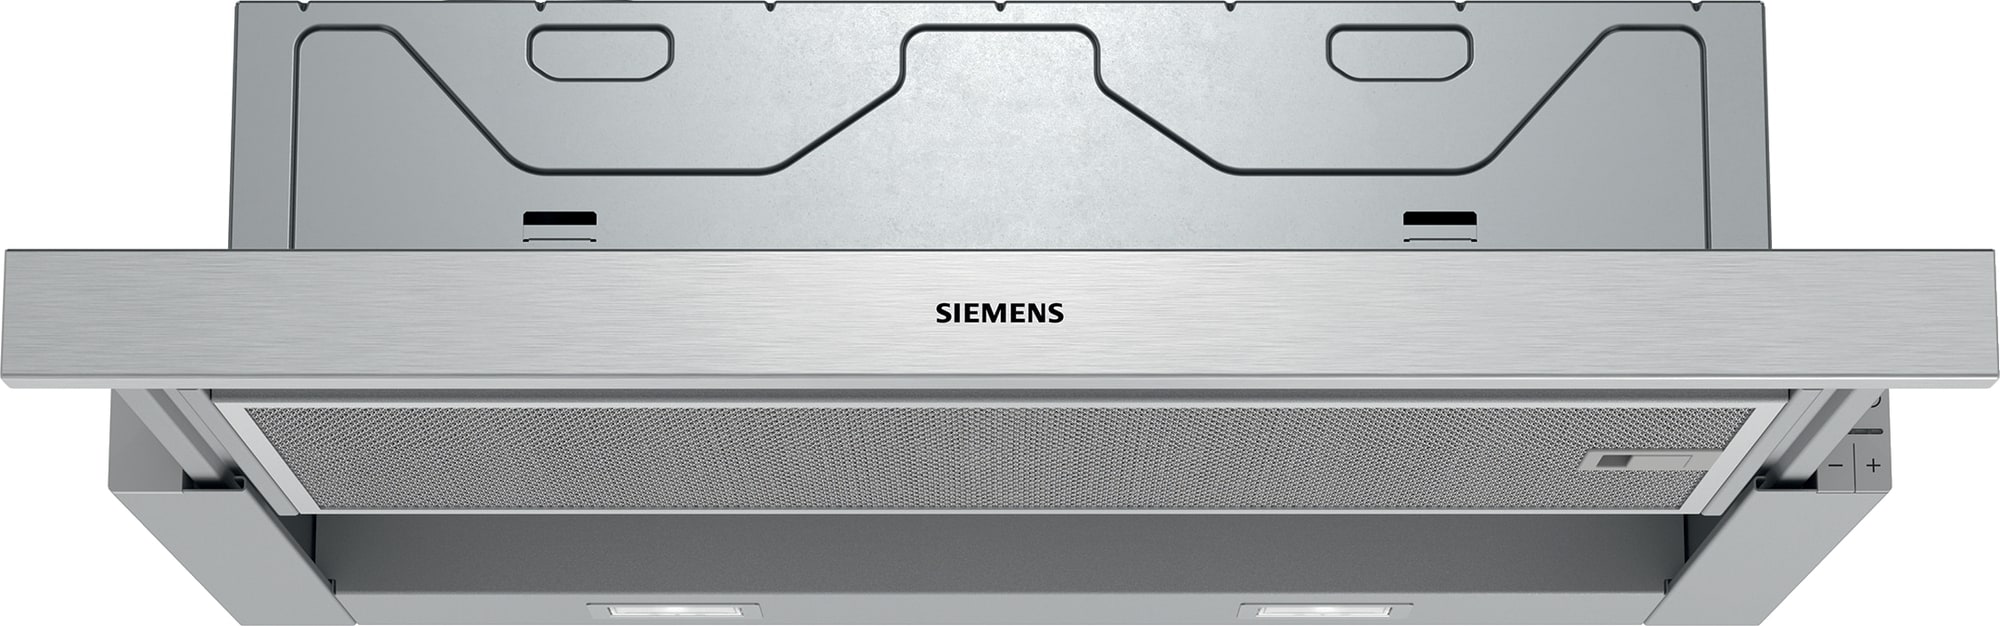 Siemens iQ300 ventilator LI64MA531 (sølv) - Elkjøp